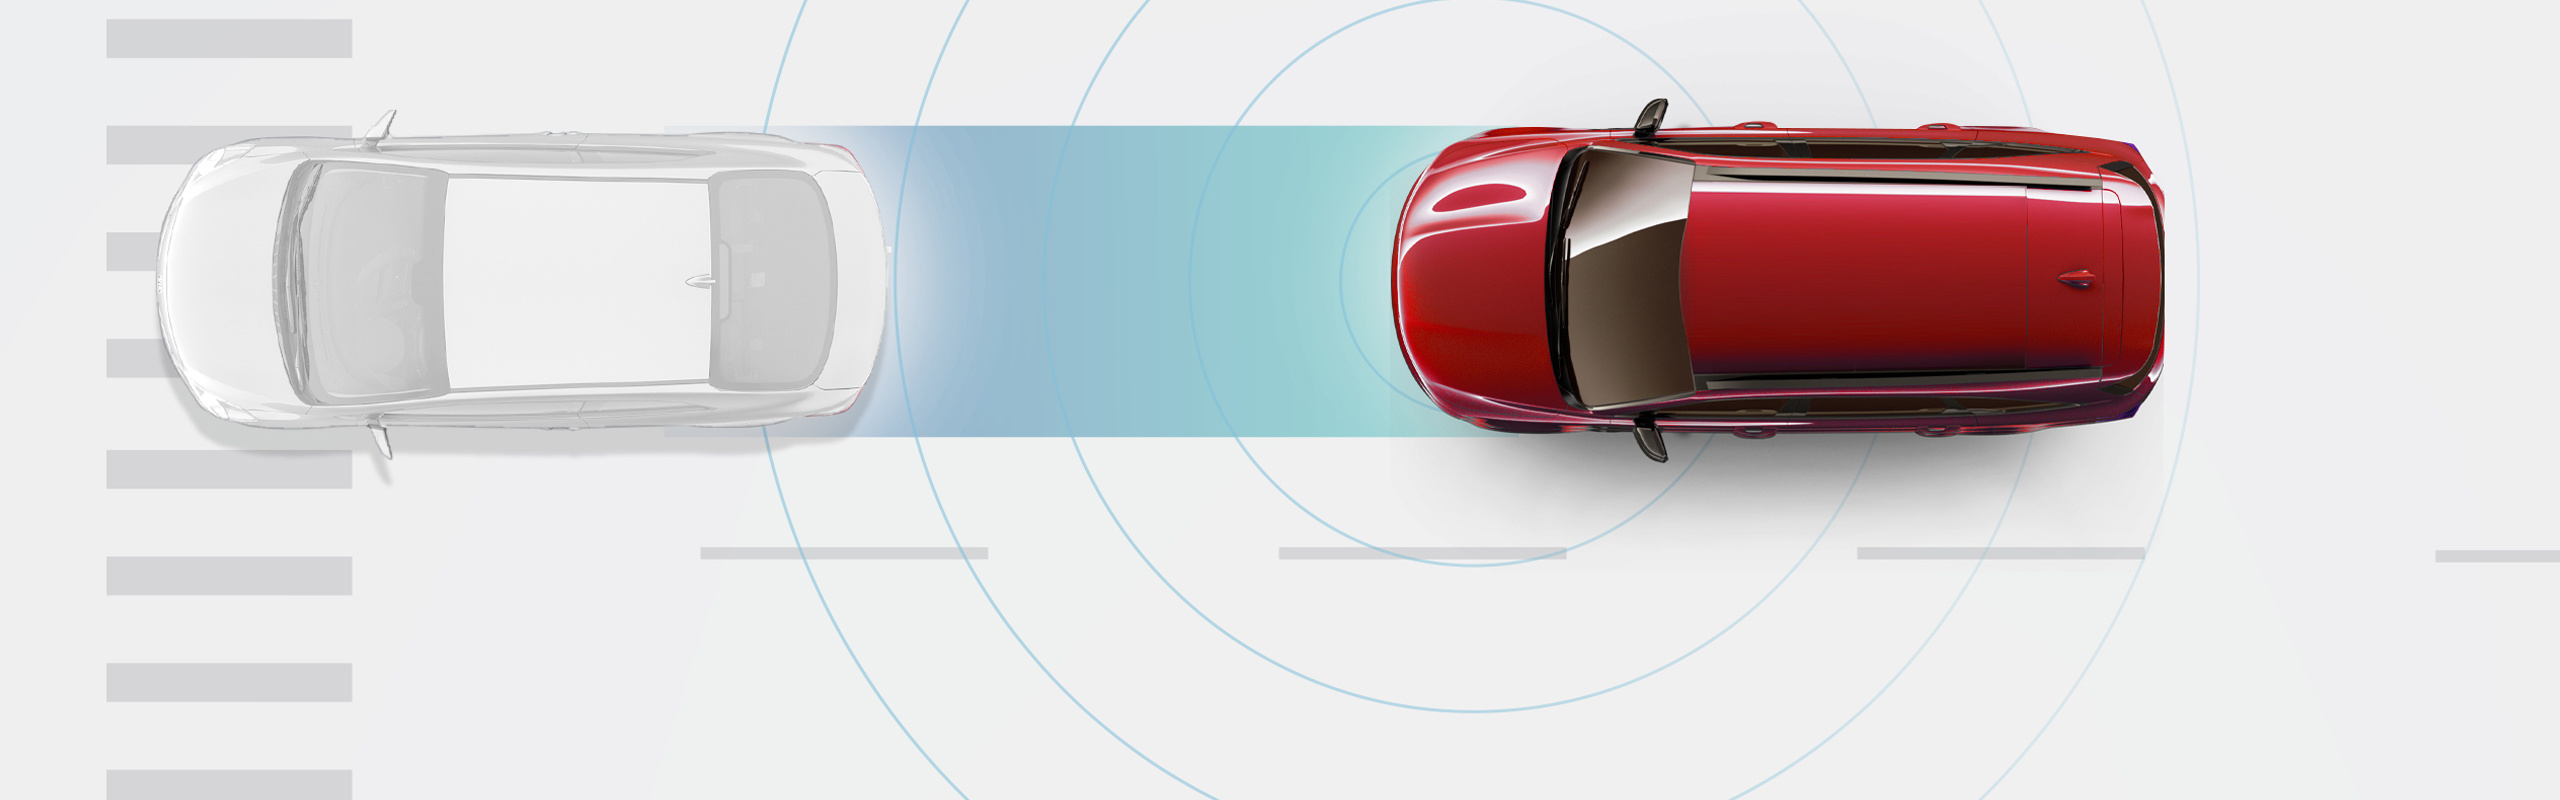 Visualización de la asistencia para evitar colisiones frontales Kia Drive Wise